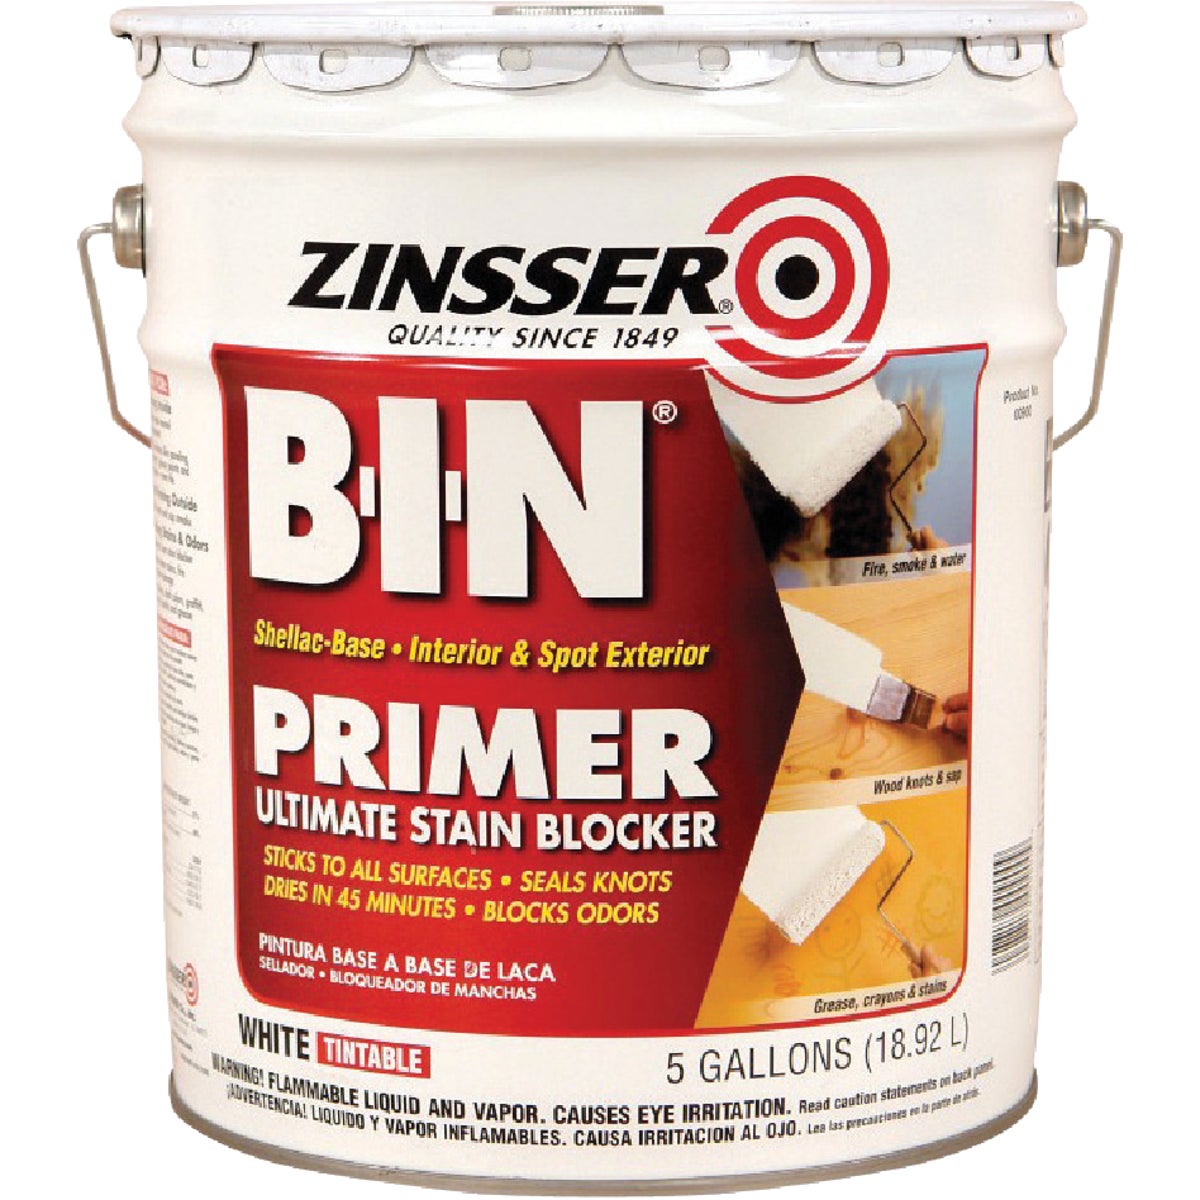 Zinsser B-I-N Shellac-Based Ultimate Stain Blocker Interior & Spot Exterior Primer, White, 5 Gal.